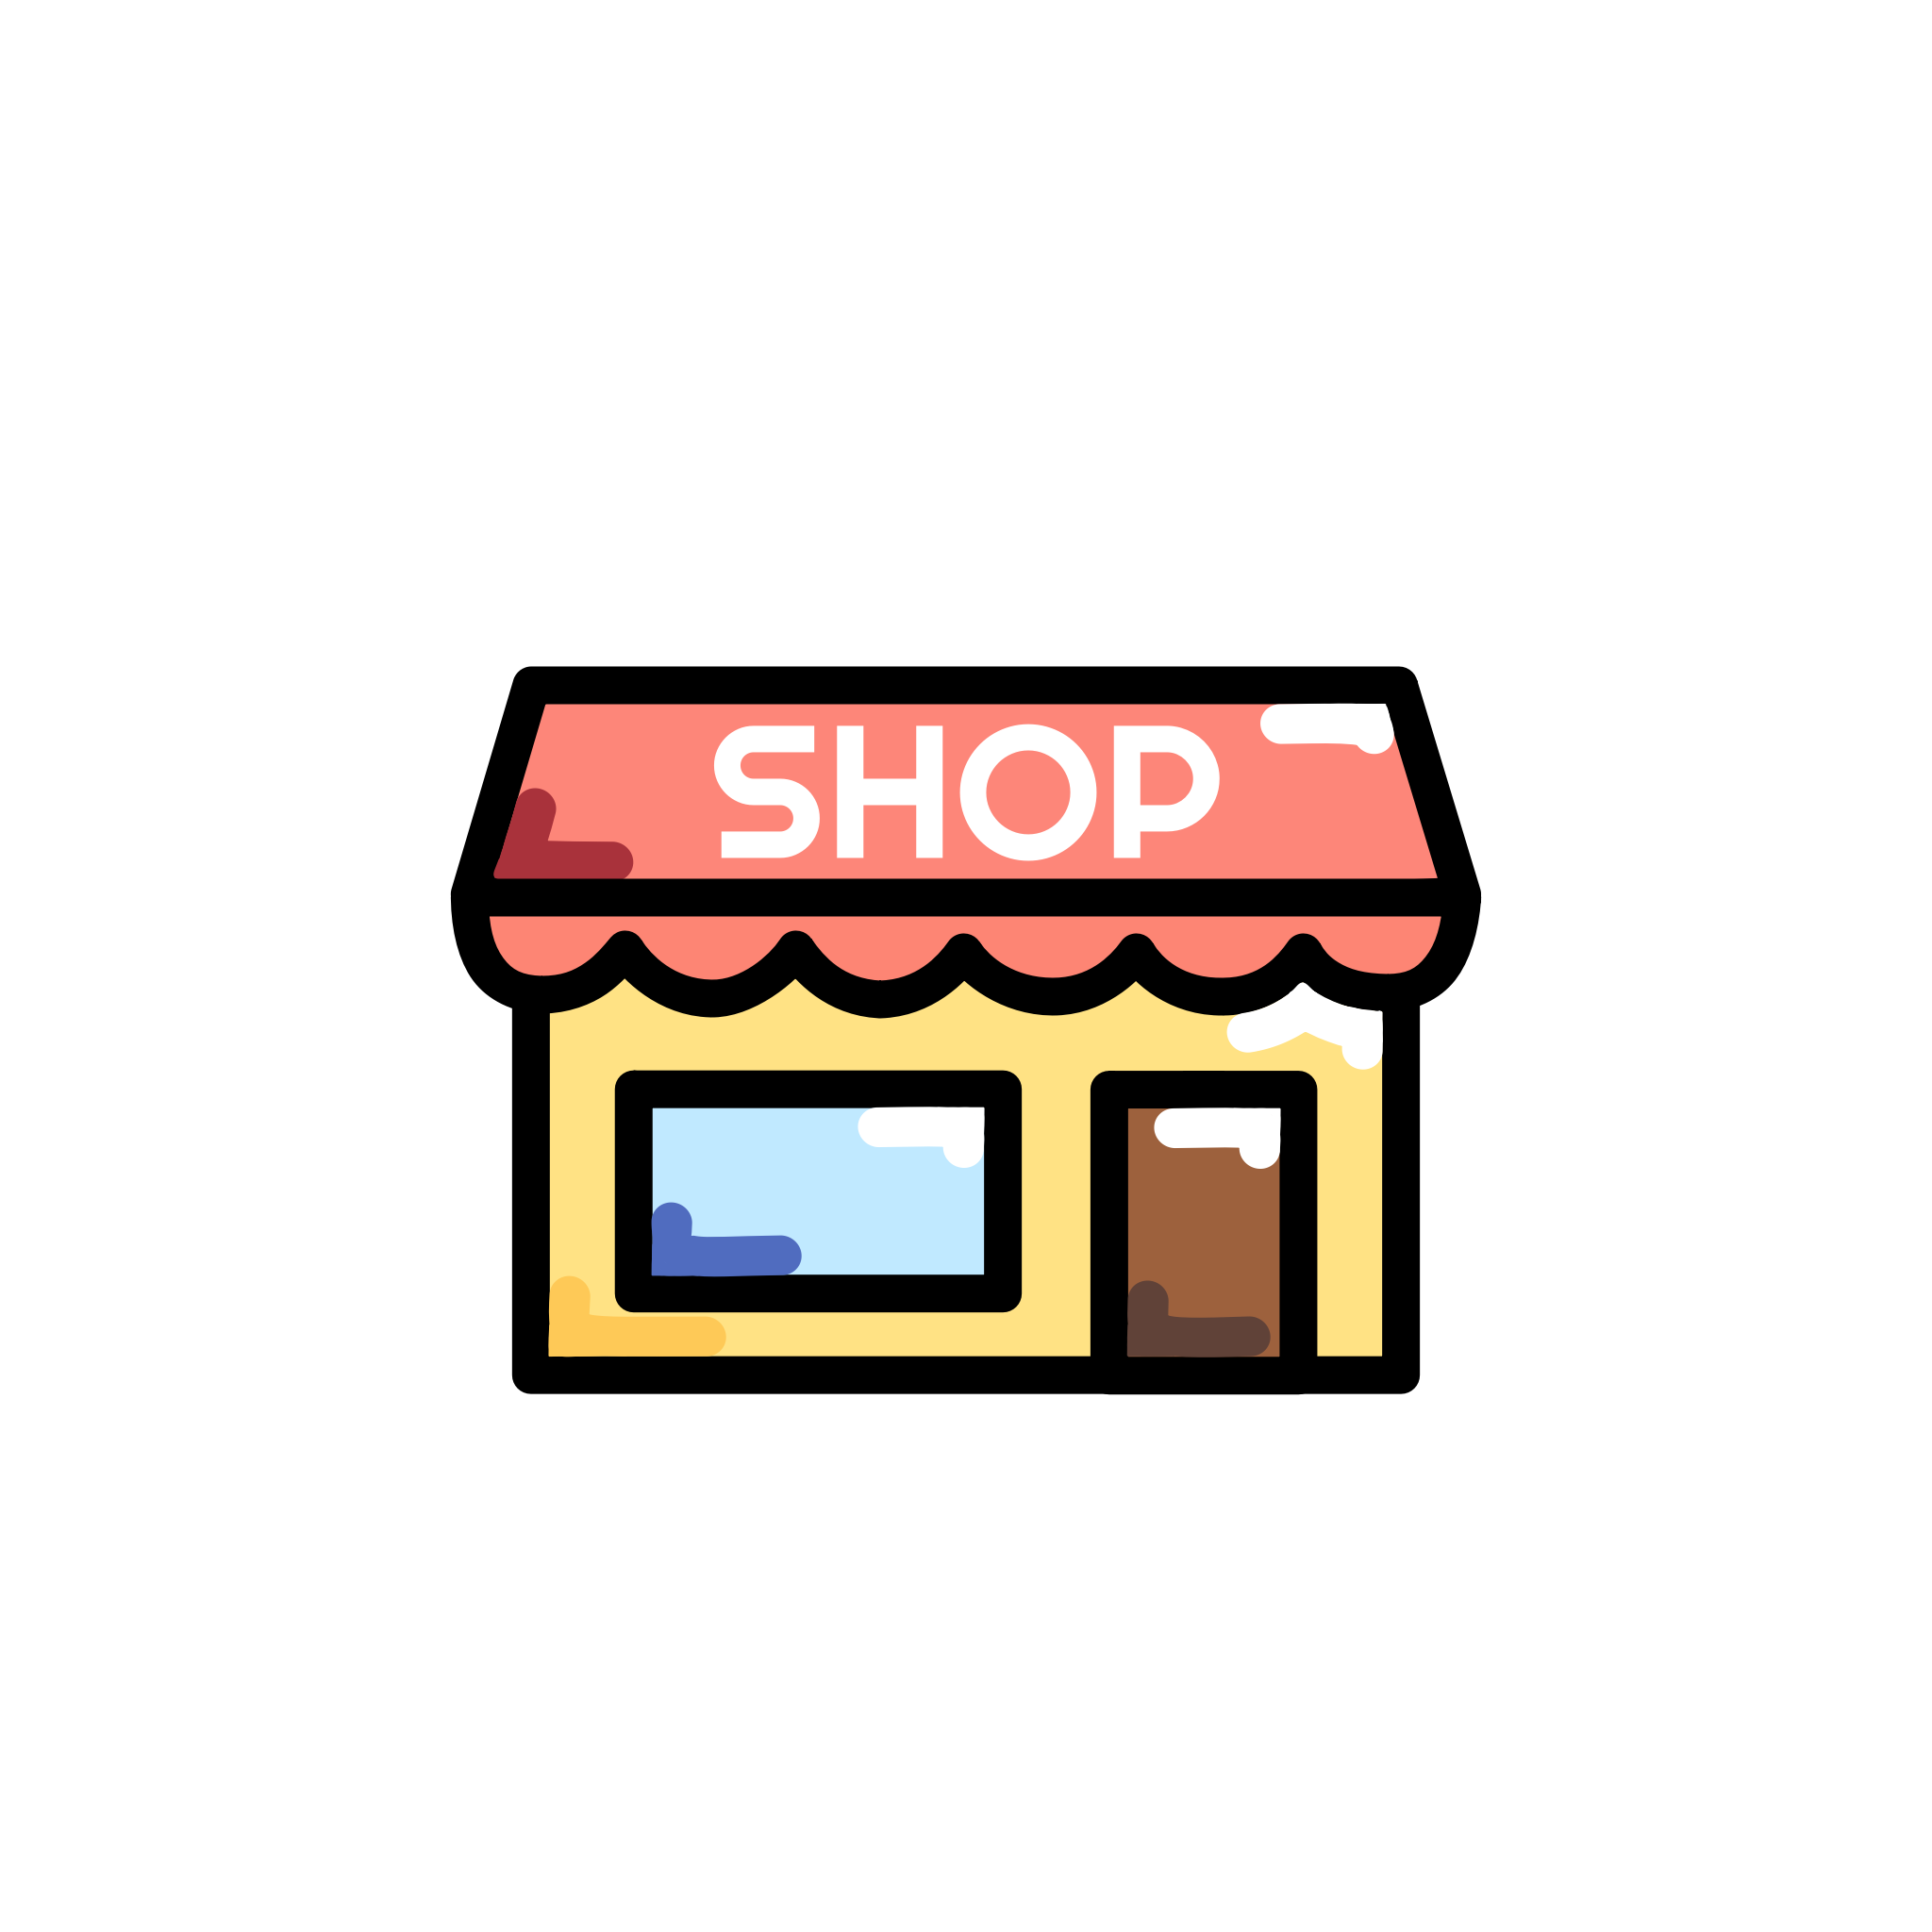 Illustration eines Kiosks von aussen mit dem Wort 'Shop' auf dem Dach